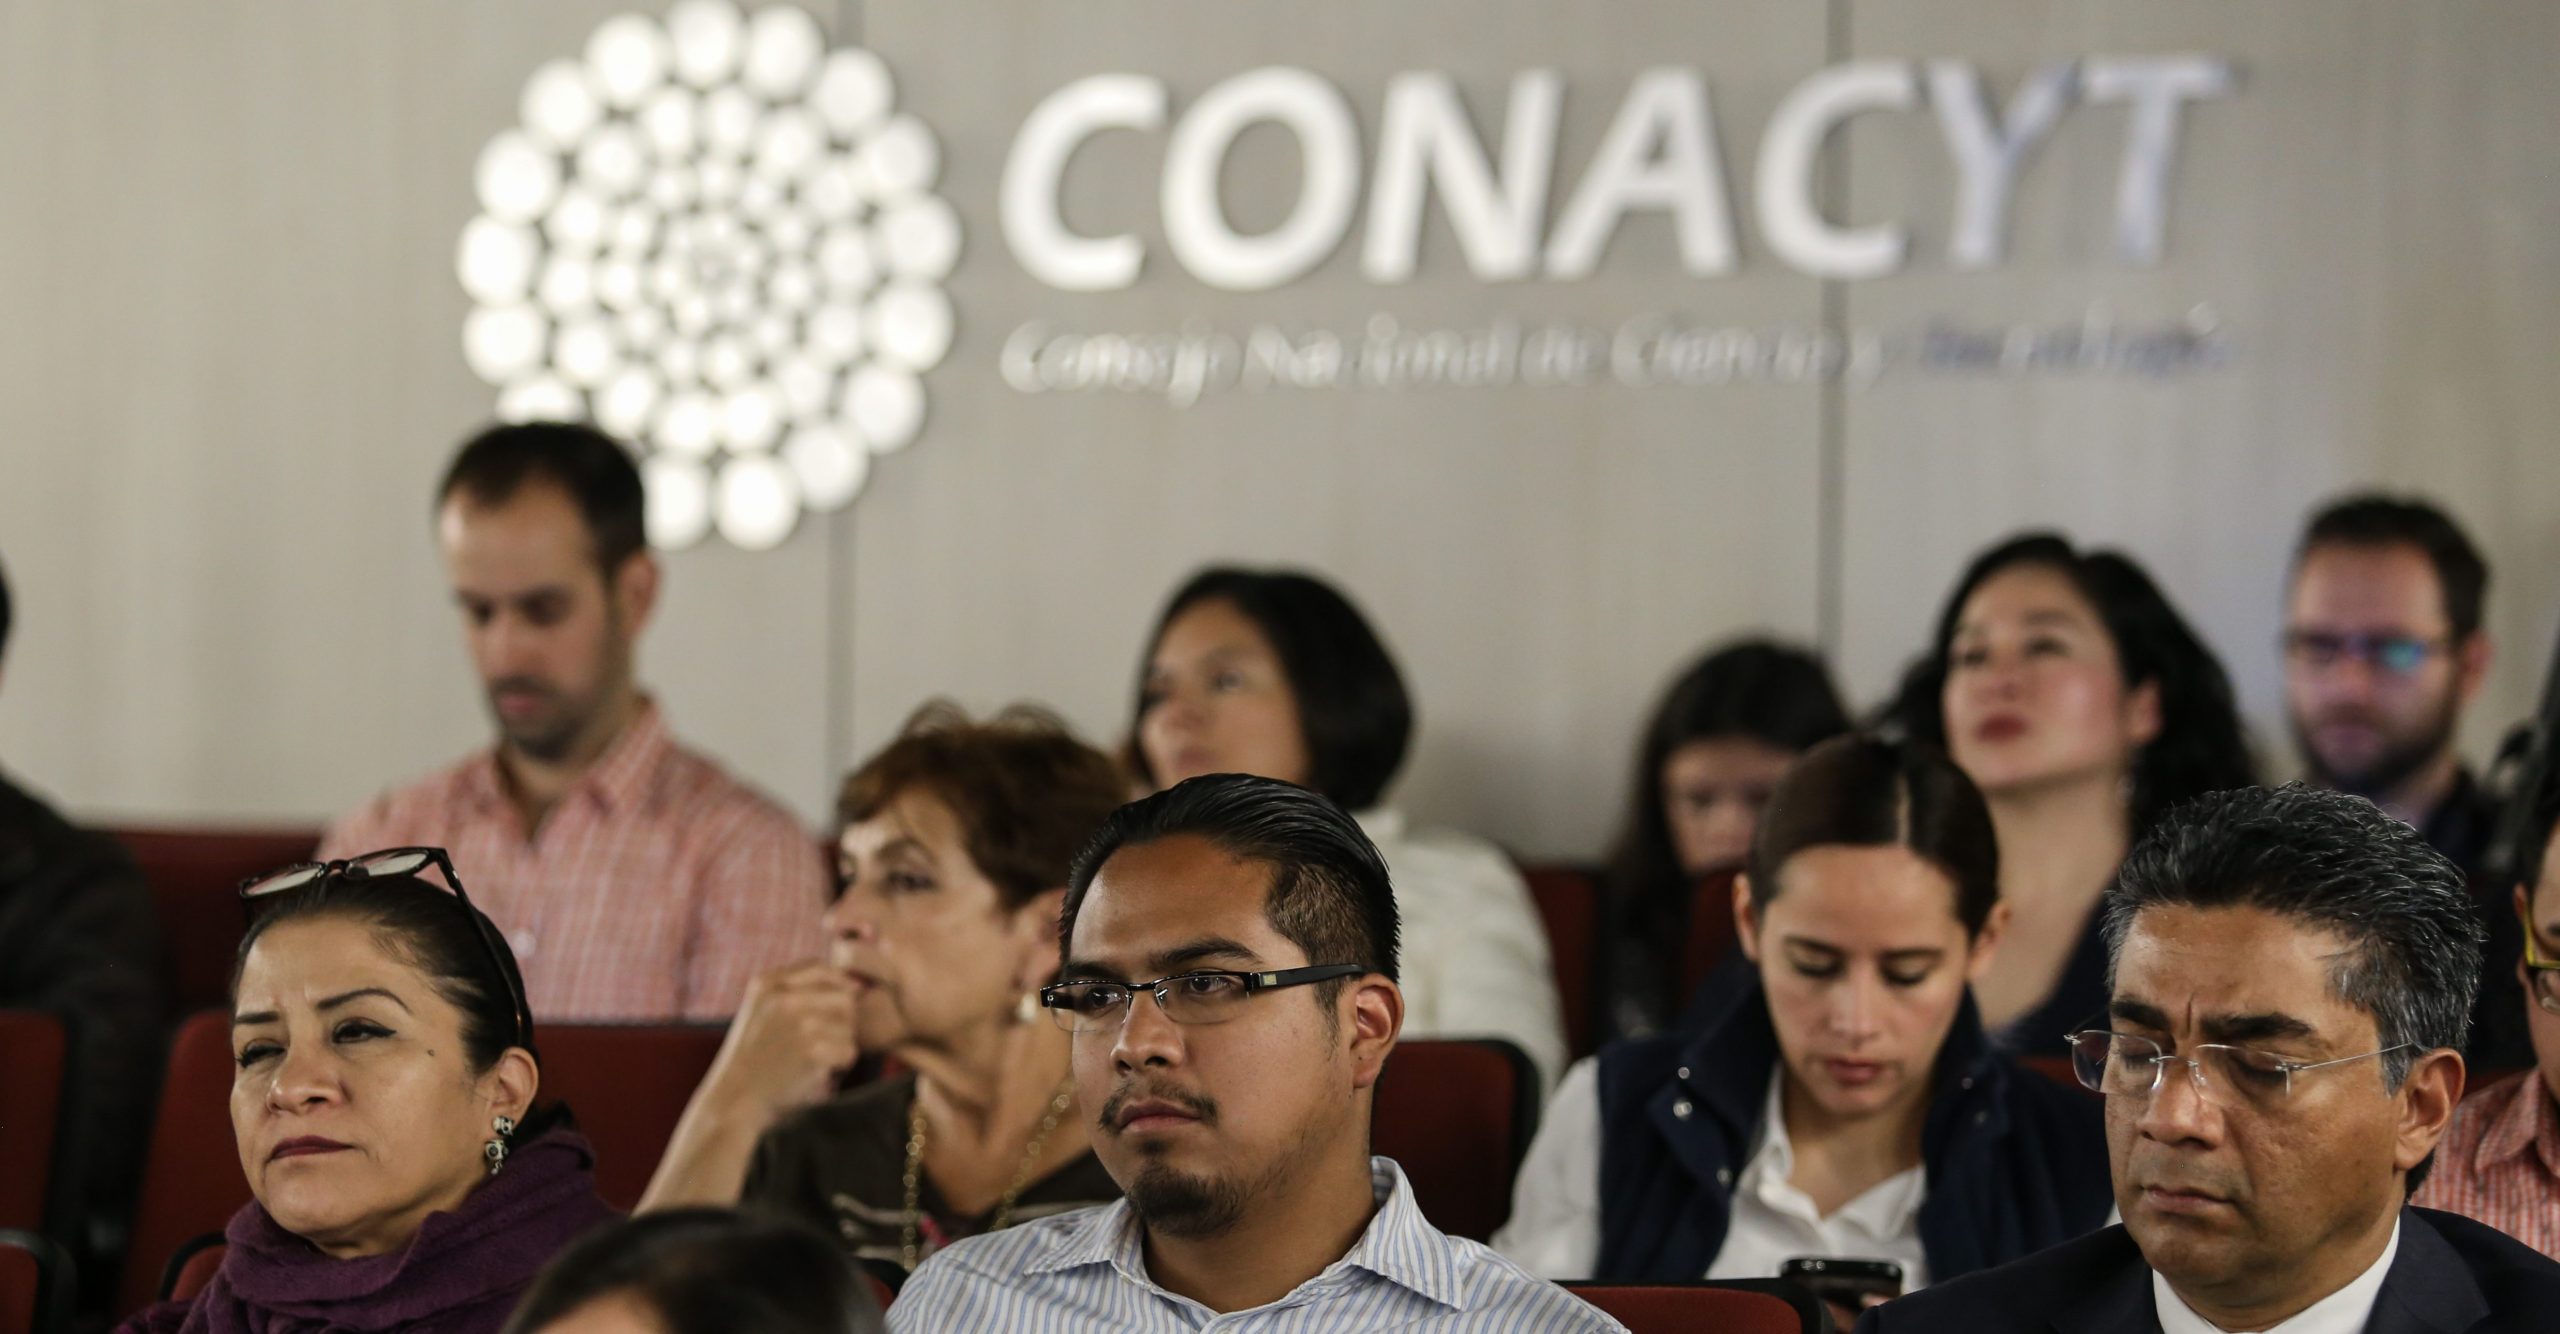 No se pagará extensión de beca de Energía a alumnos en el extranjero: Conacyt